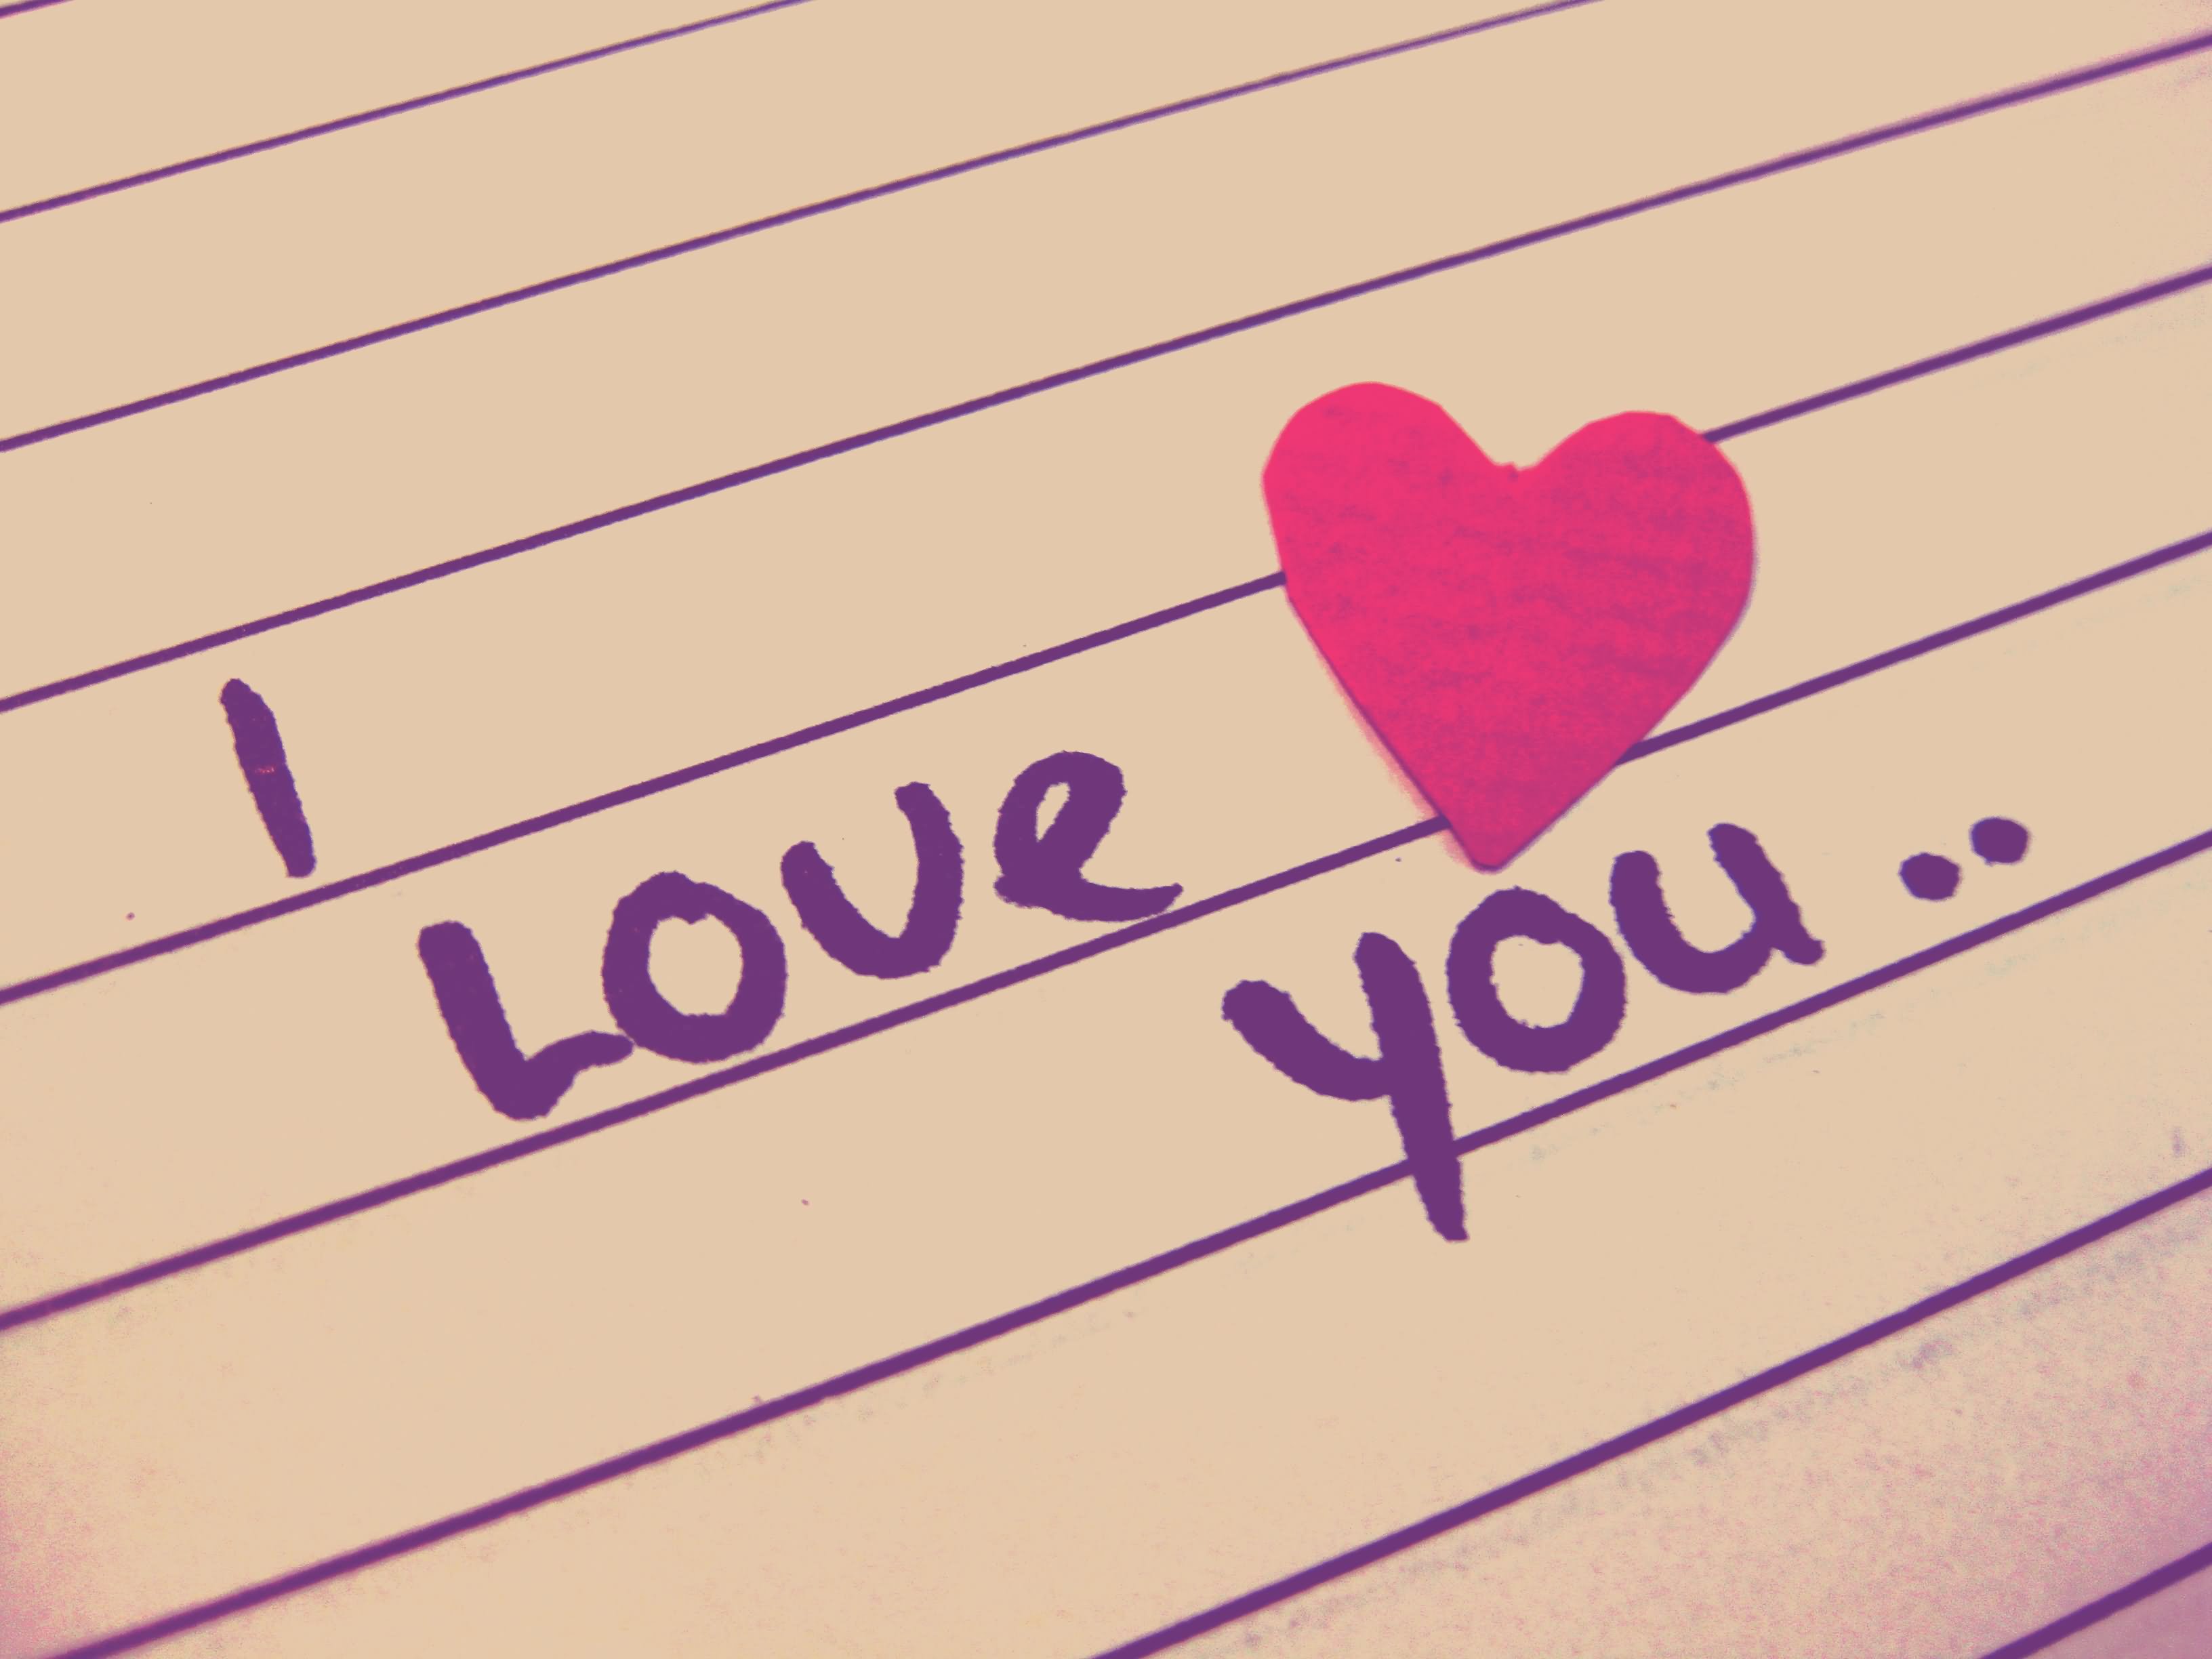 i-love-you-heart-wallpaper-94982448.jpg